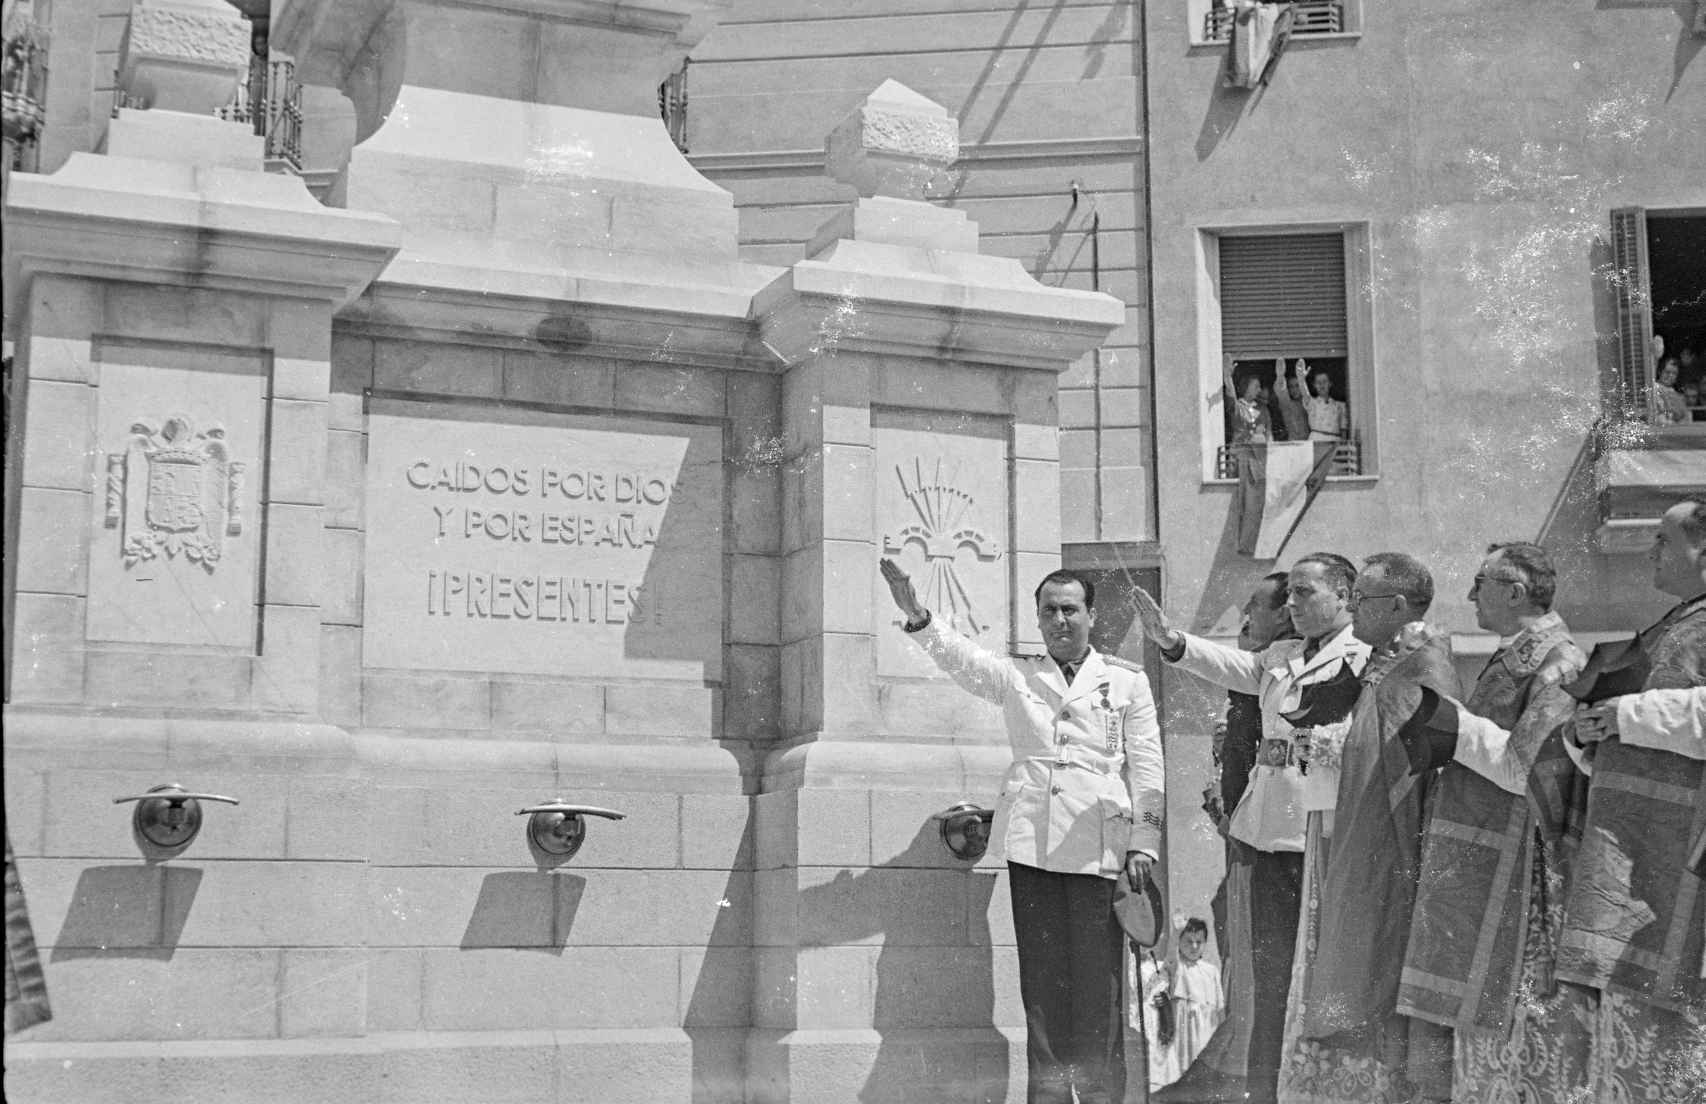 El alcade Josep Maria i Marcet i Coll, en la inauguración del monumneto a los caídos de Sabadell en 1943.